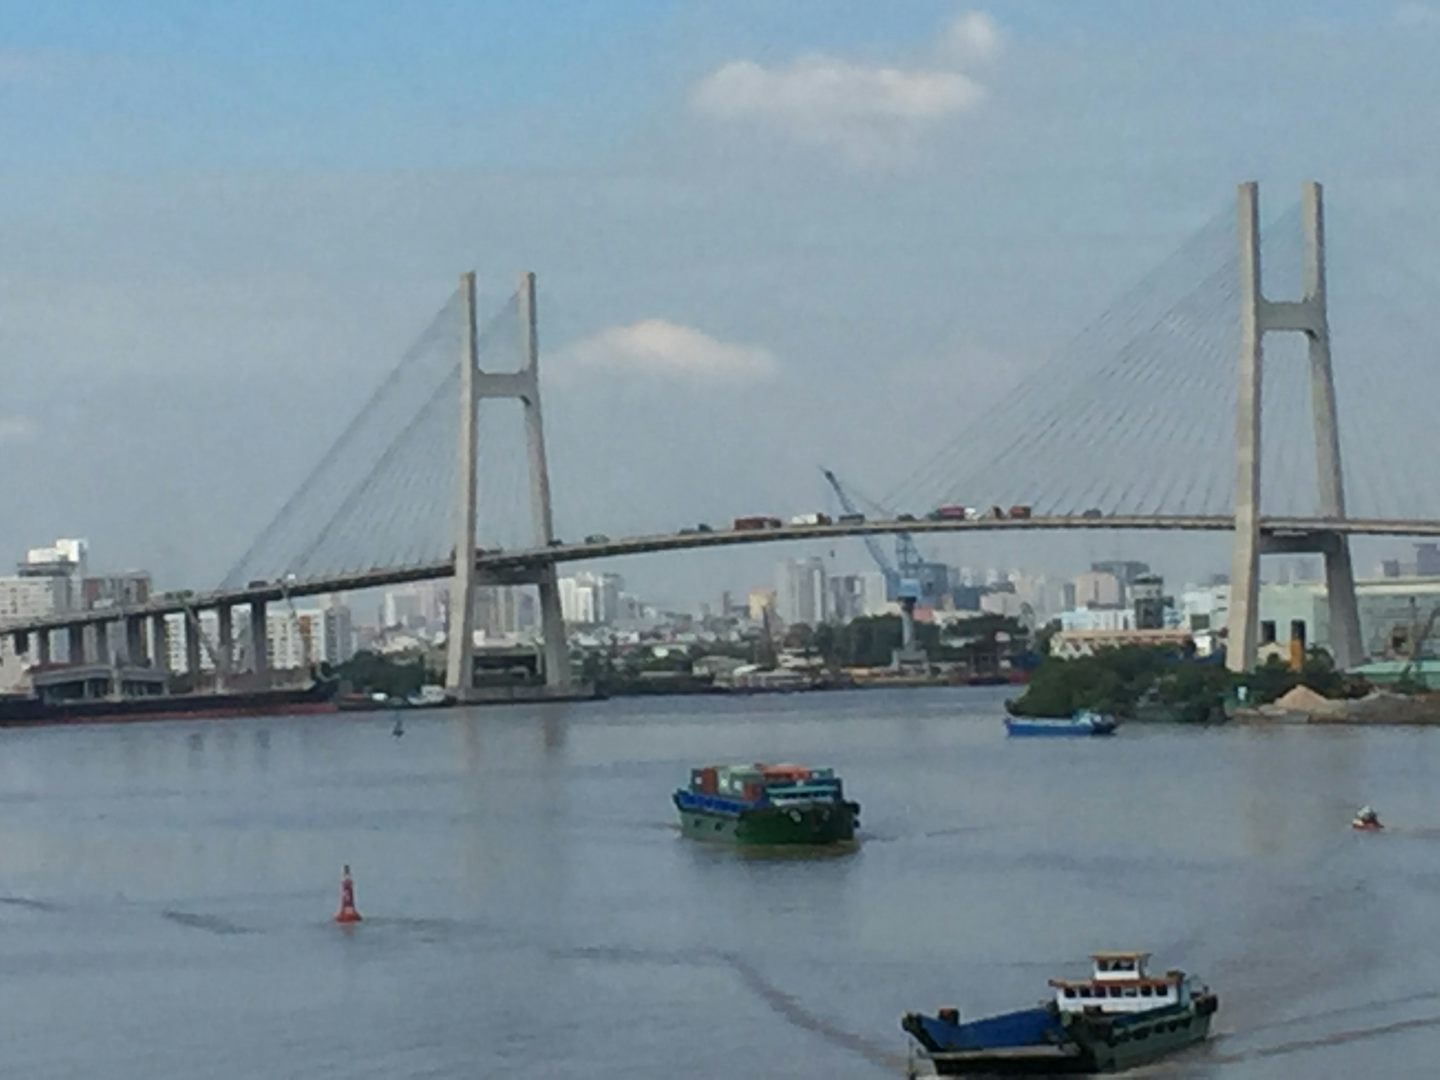 coming up the Saigon river to Saigon